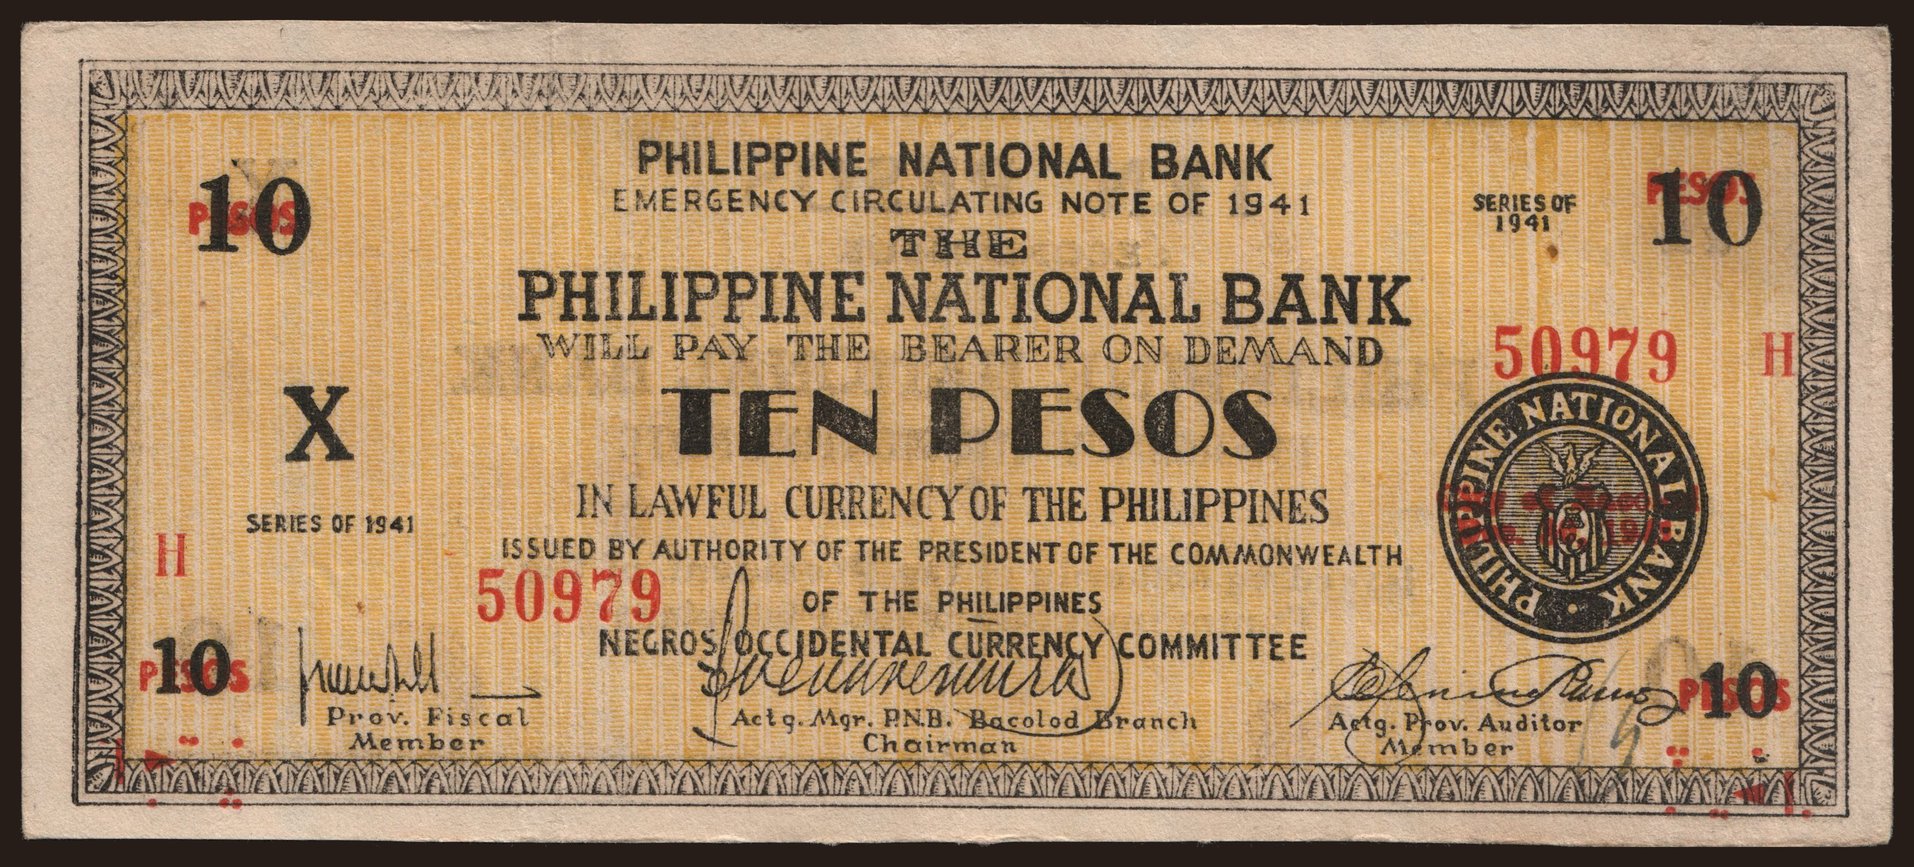 Negros Occidental, 10 pesos, 1941